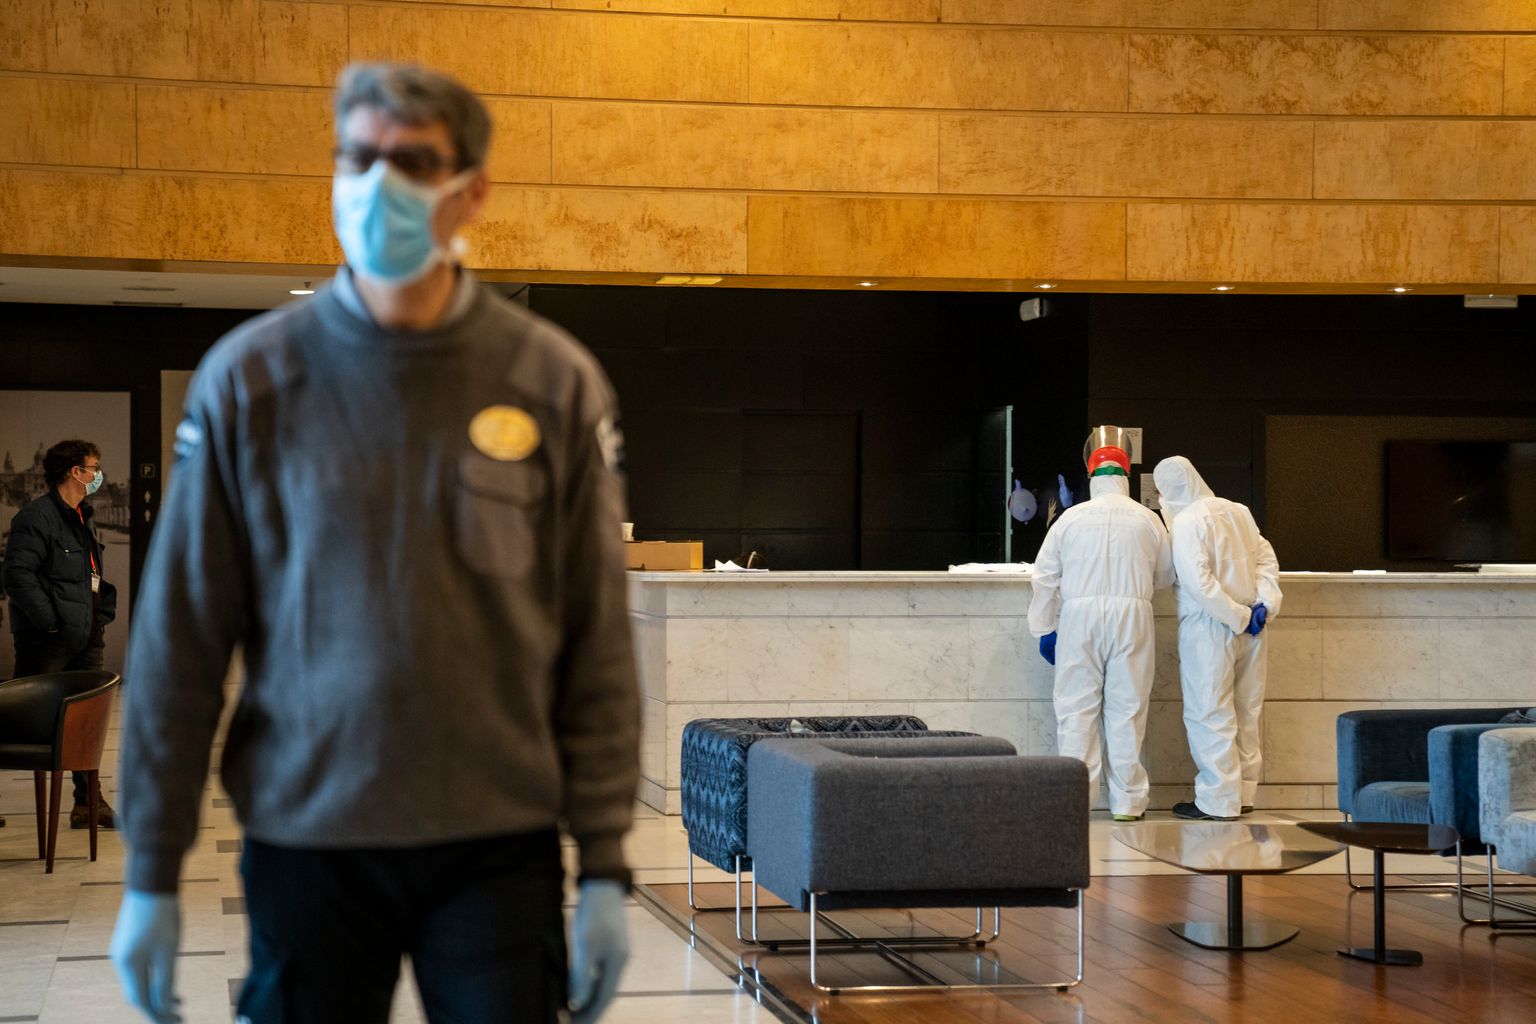 Personal de seguretat i sanitari a la recepció de l’Hotel Catalonia Plaza. El guarda de seguretat porta guants i mascareta i els sanitaris porten una granota impermeable, guants i mascareta